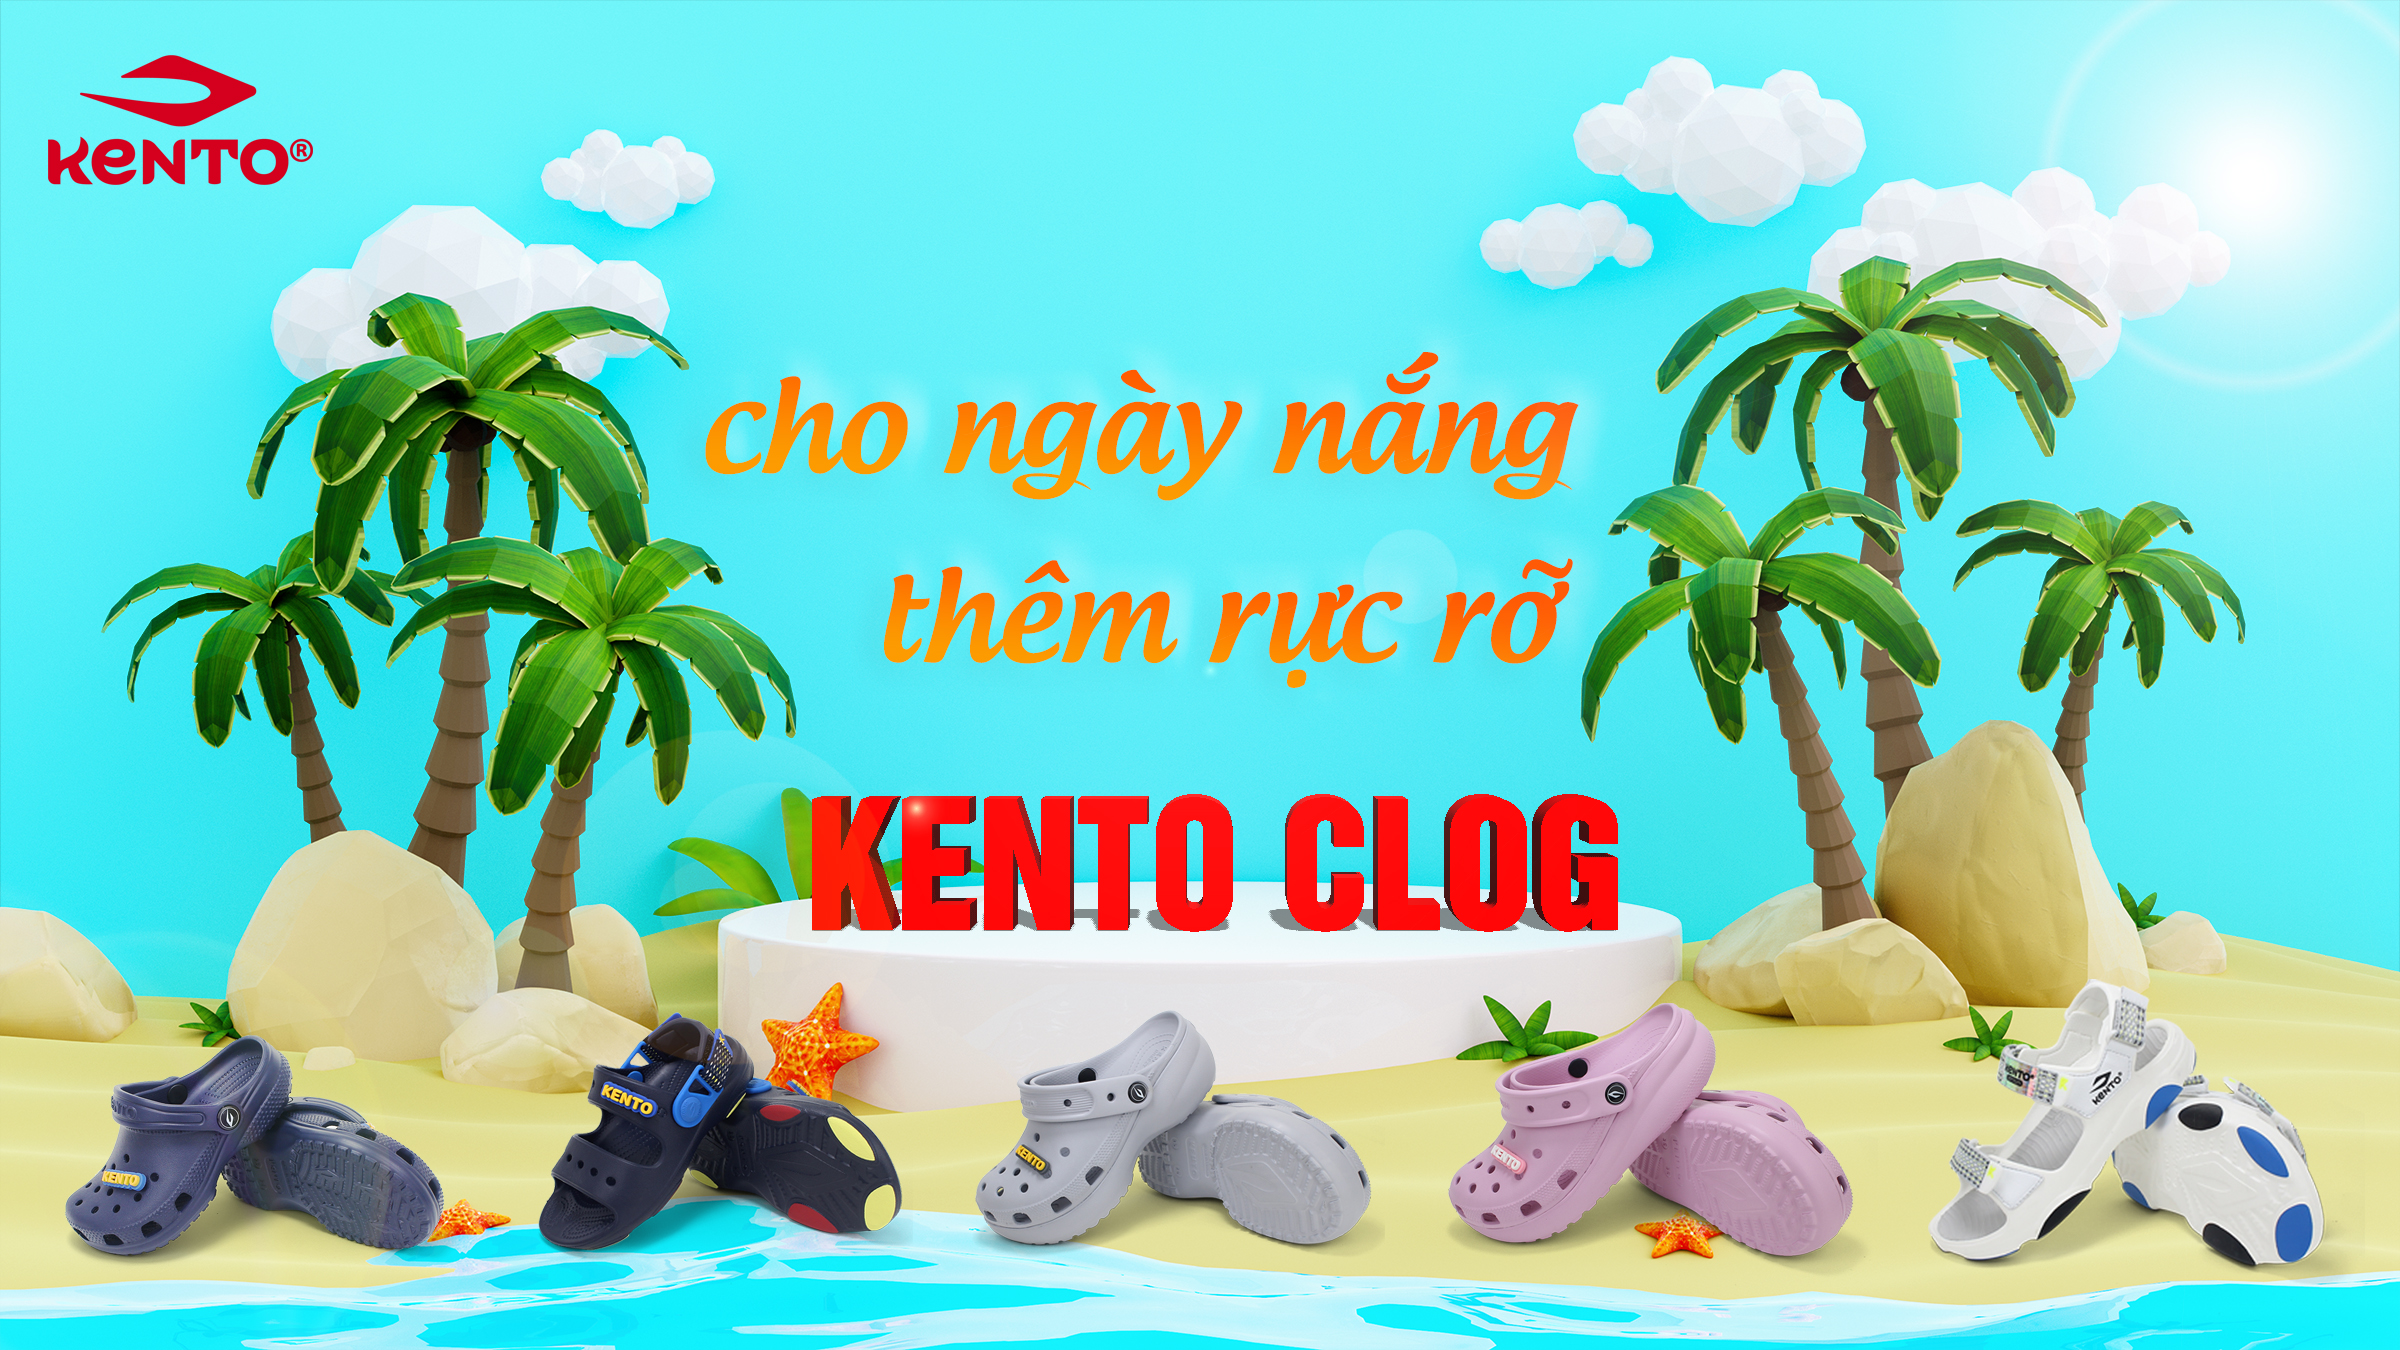 Kento Clog - Cho những ngày nắng